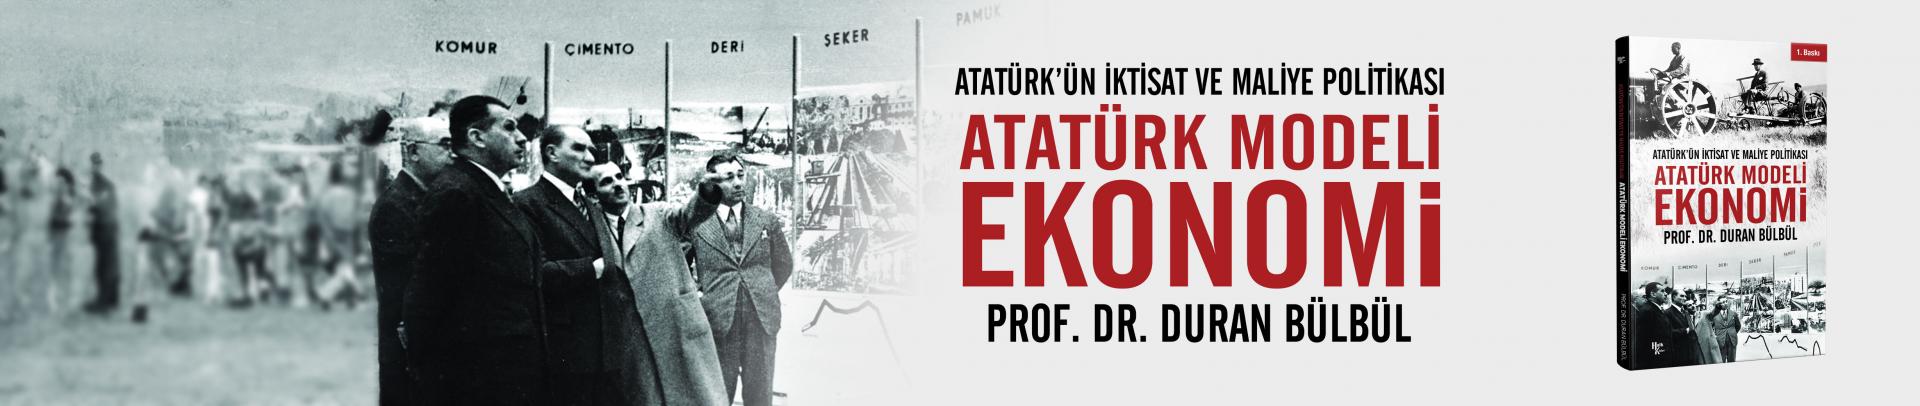 Atatürk Modeli Ekonomi